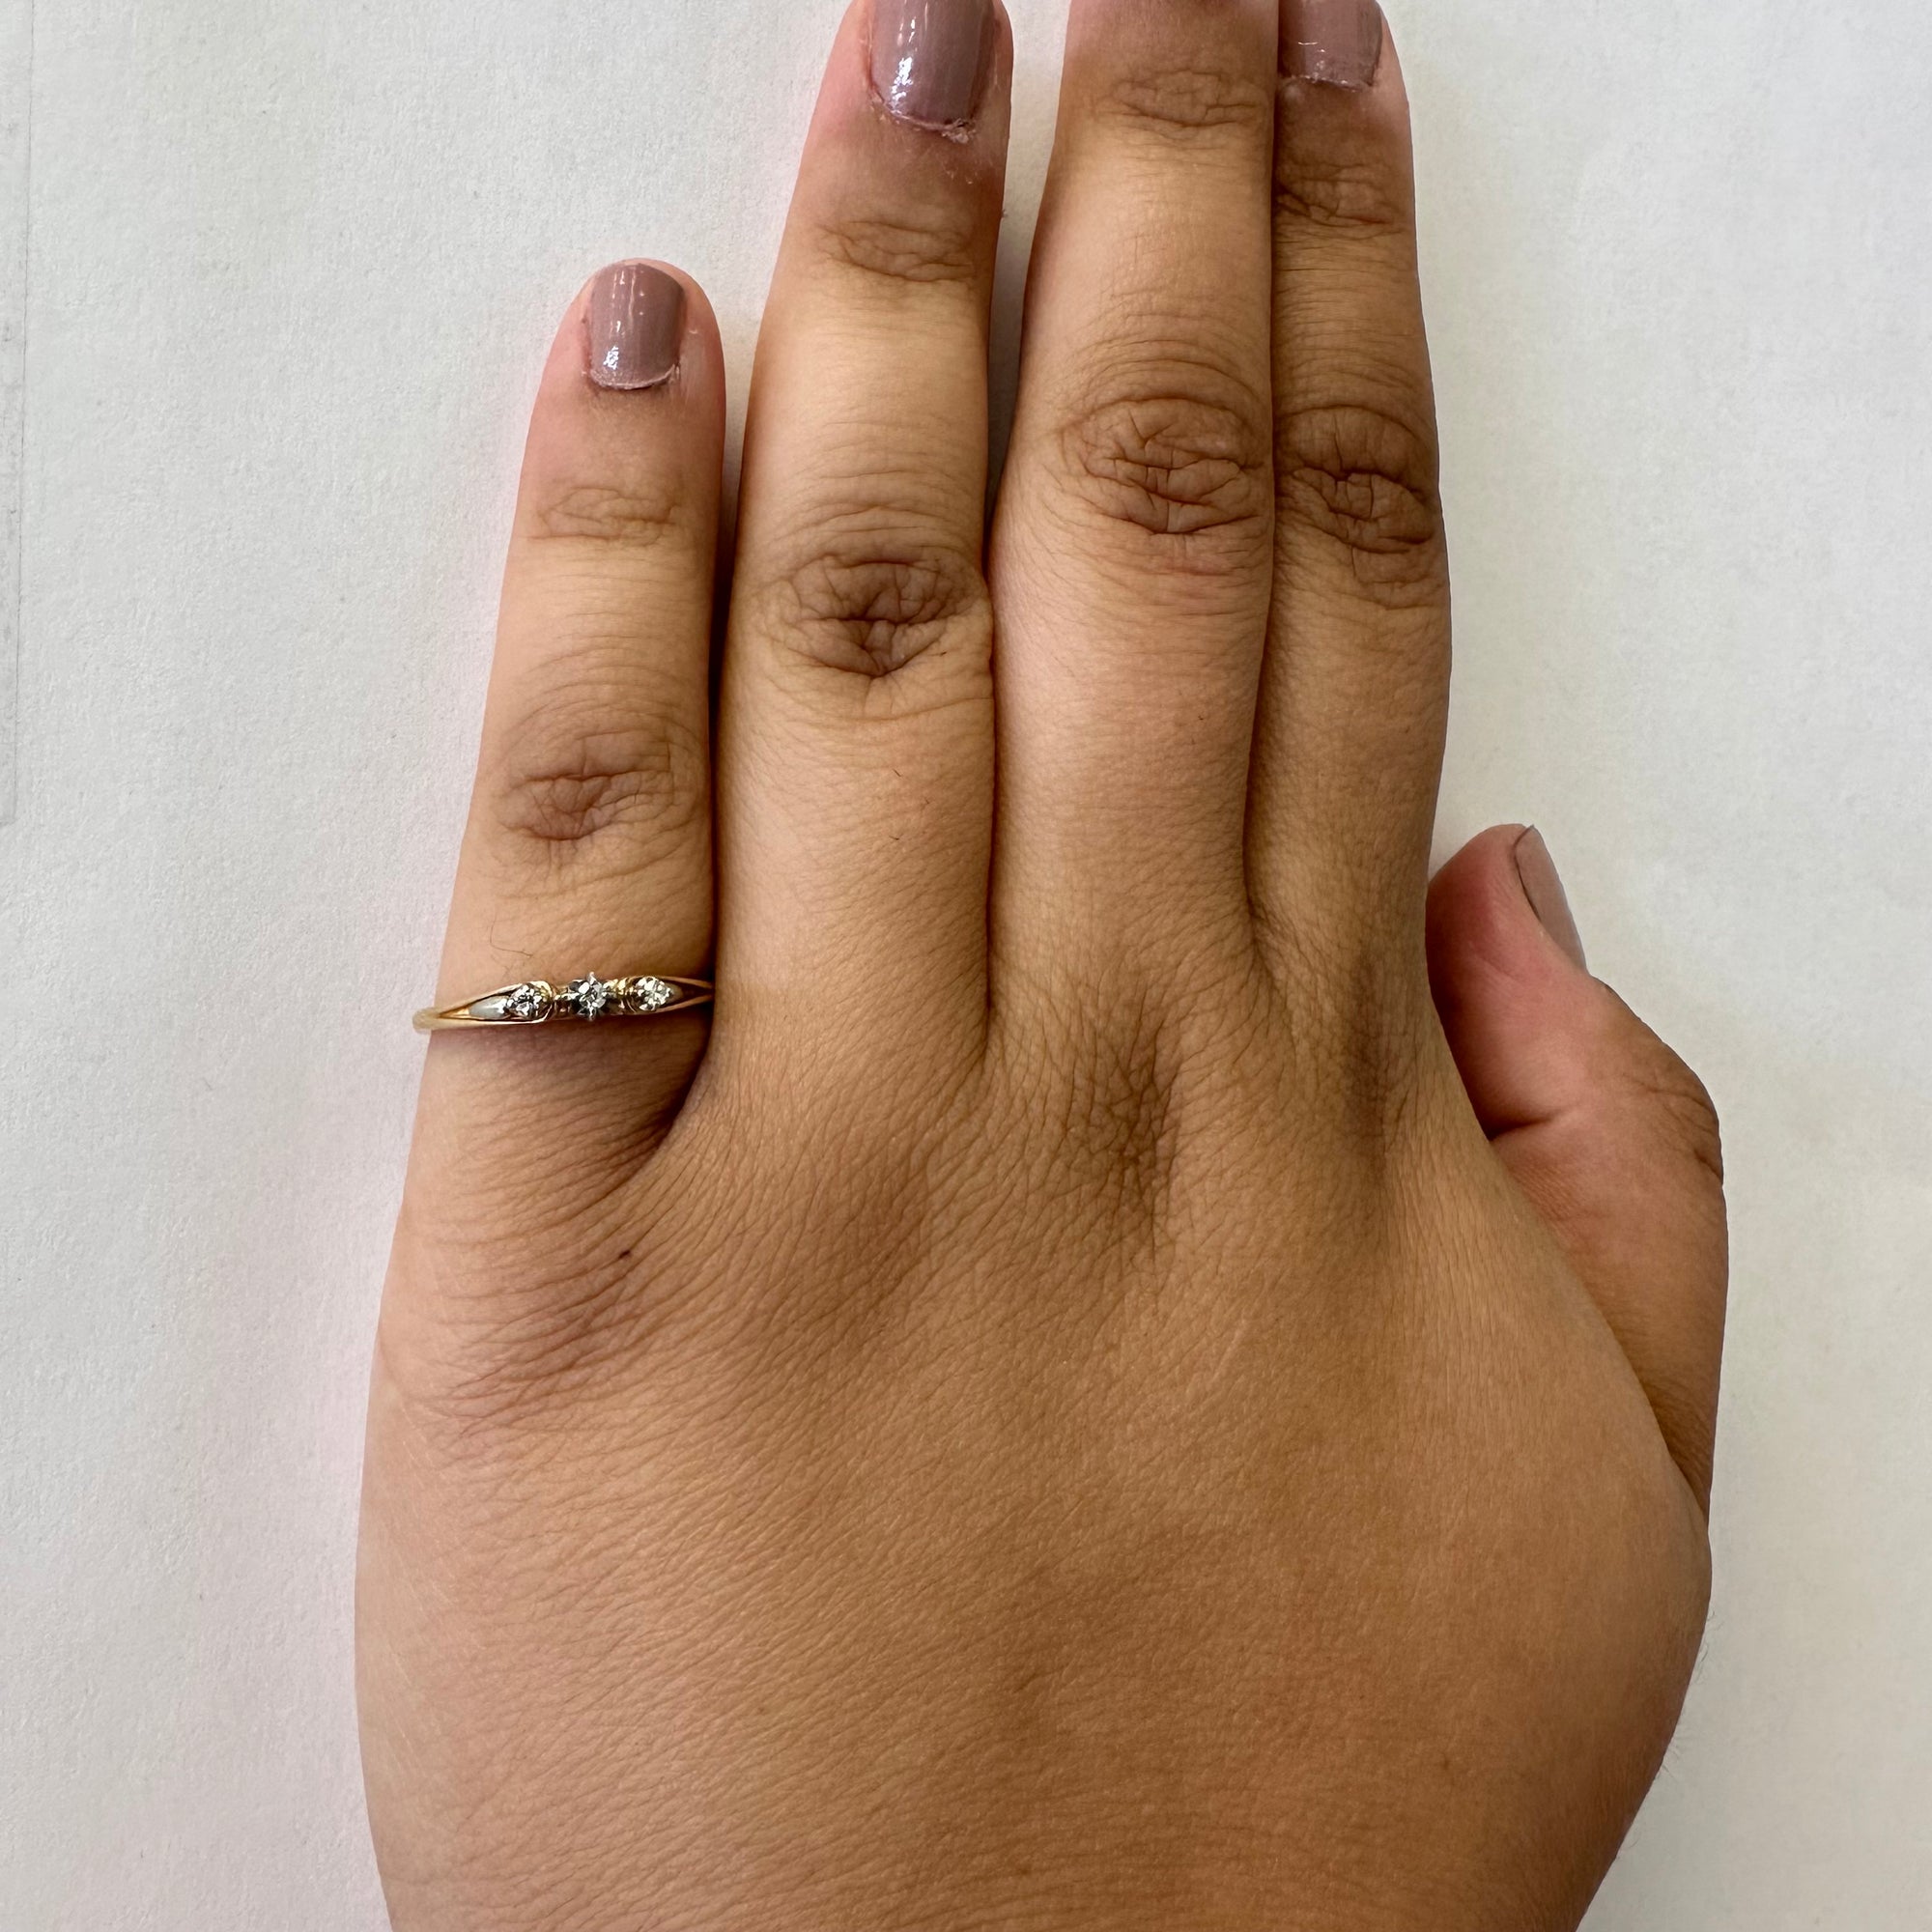 Petite Three Stone Diamond Ring | 0.05ctw | SZ 7.5 |